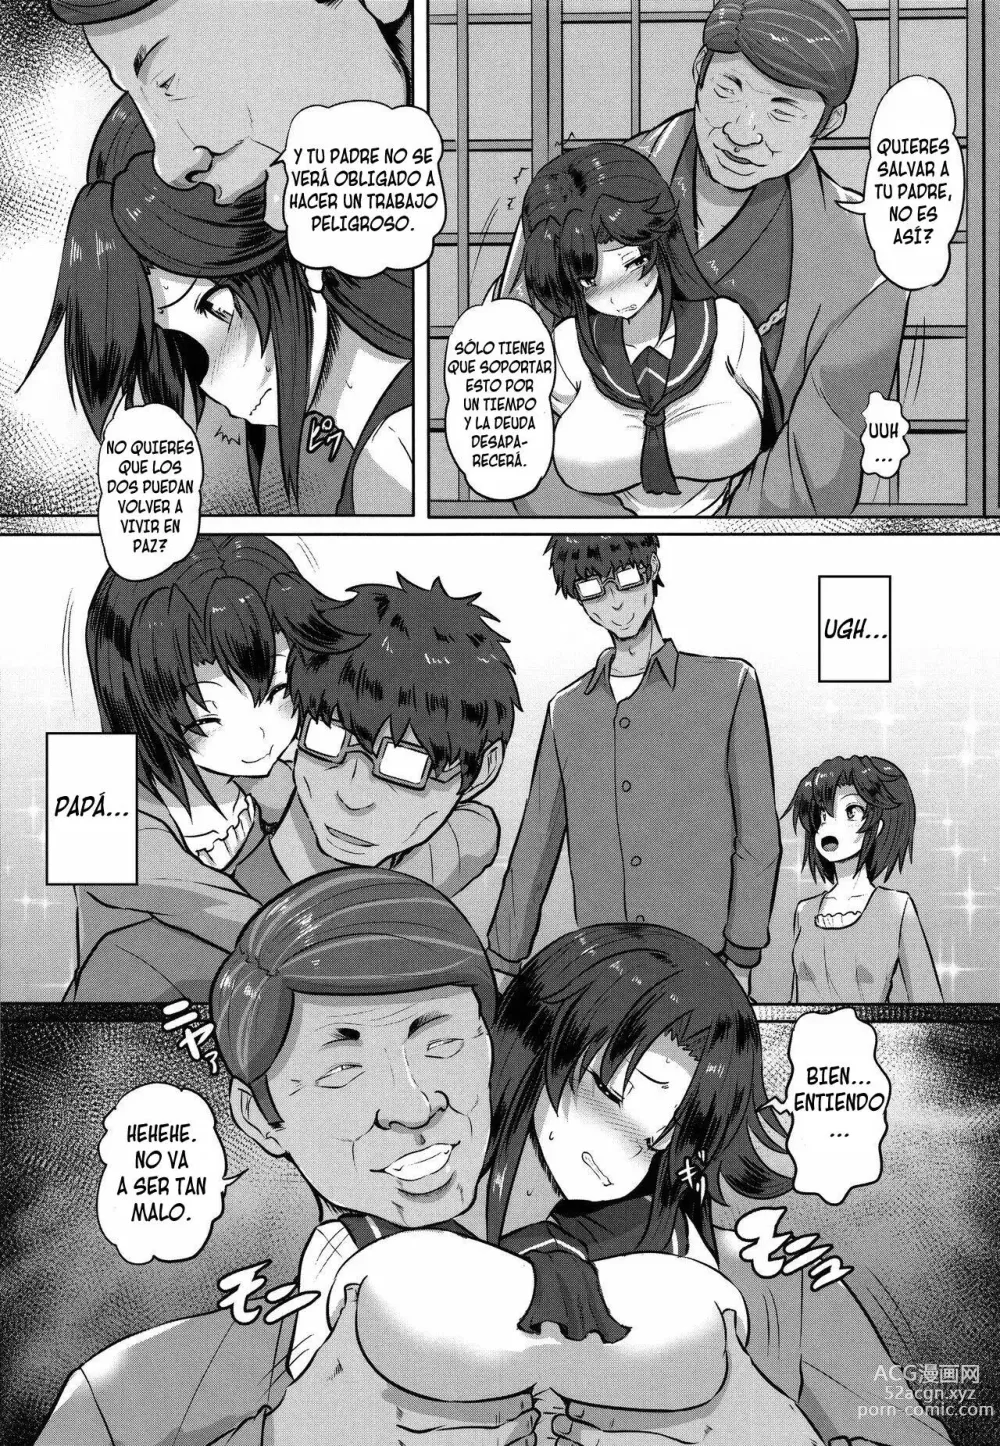 Page 6 of manga El registro de una chica de instituto que salda sus deudas con una violación 1-3